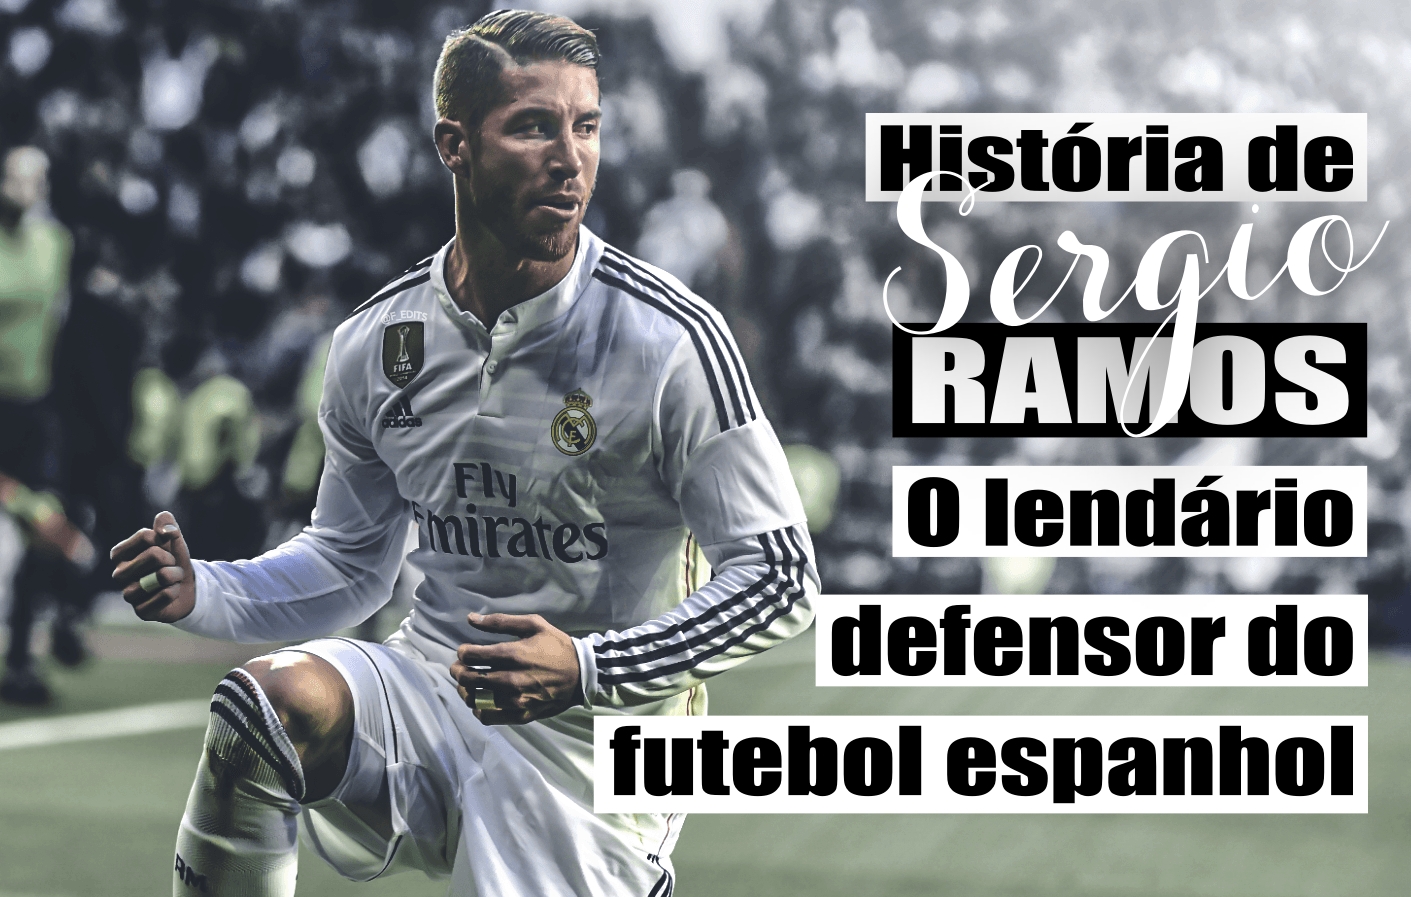 História de Sergio Ramos - O lendário defensor do futebol espanhol.